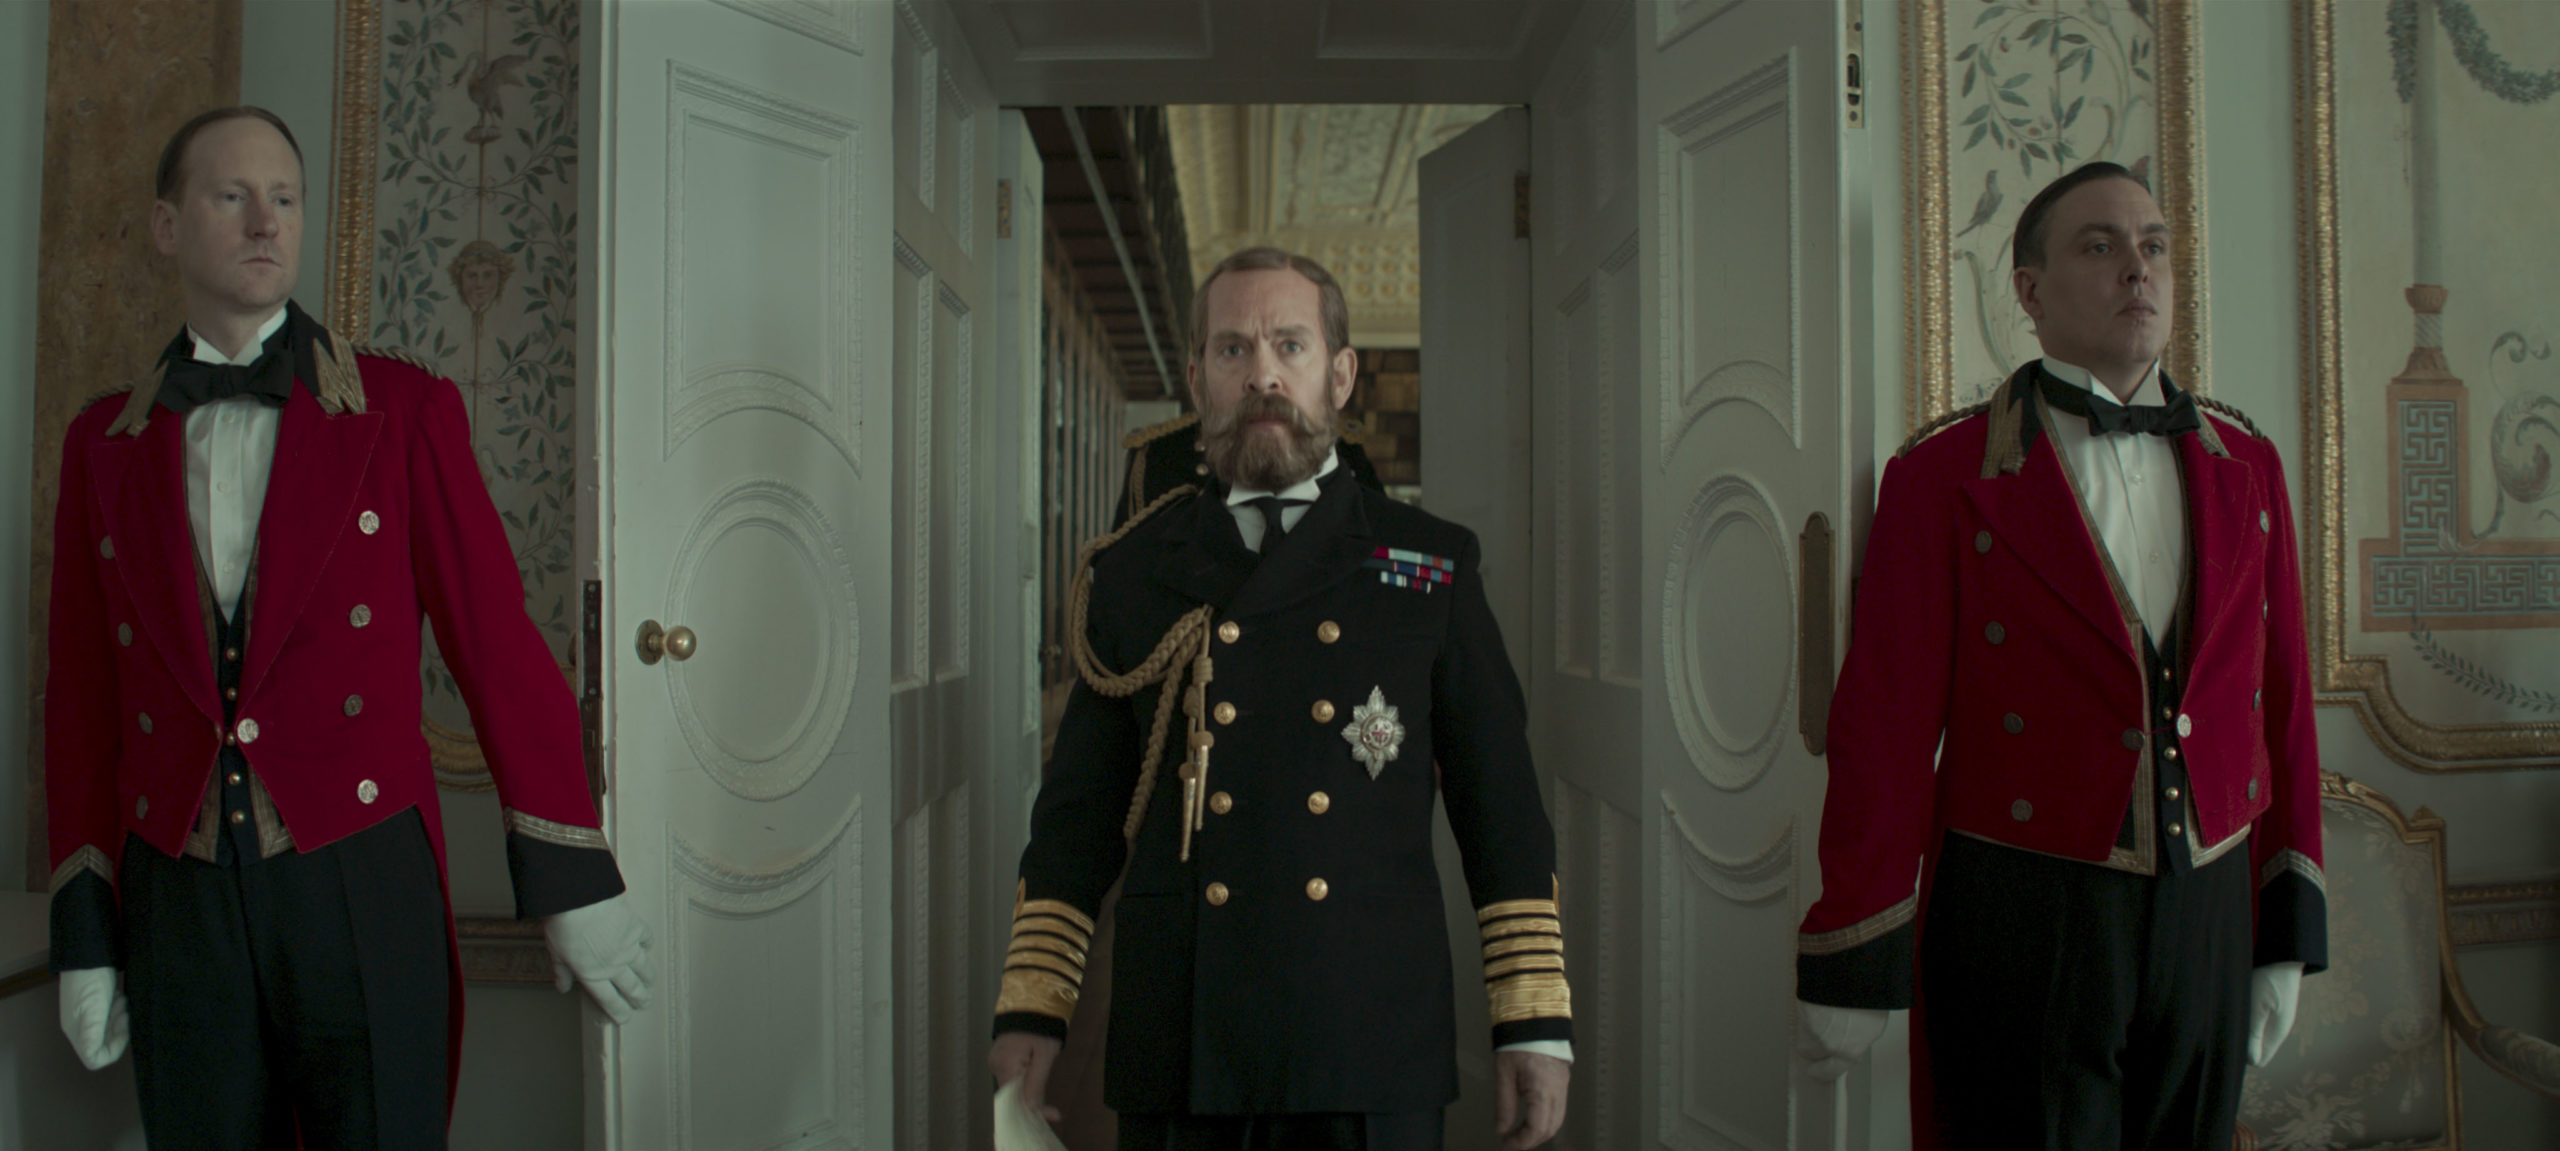 電影 影評 英國紳士 皇家特工 第一任務 Kingsman Matthew Vaughn Tom Hollander 英王佐治五世 一人分飾三角